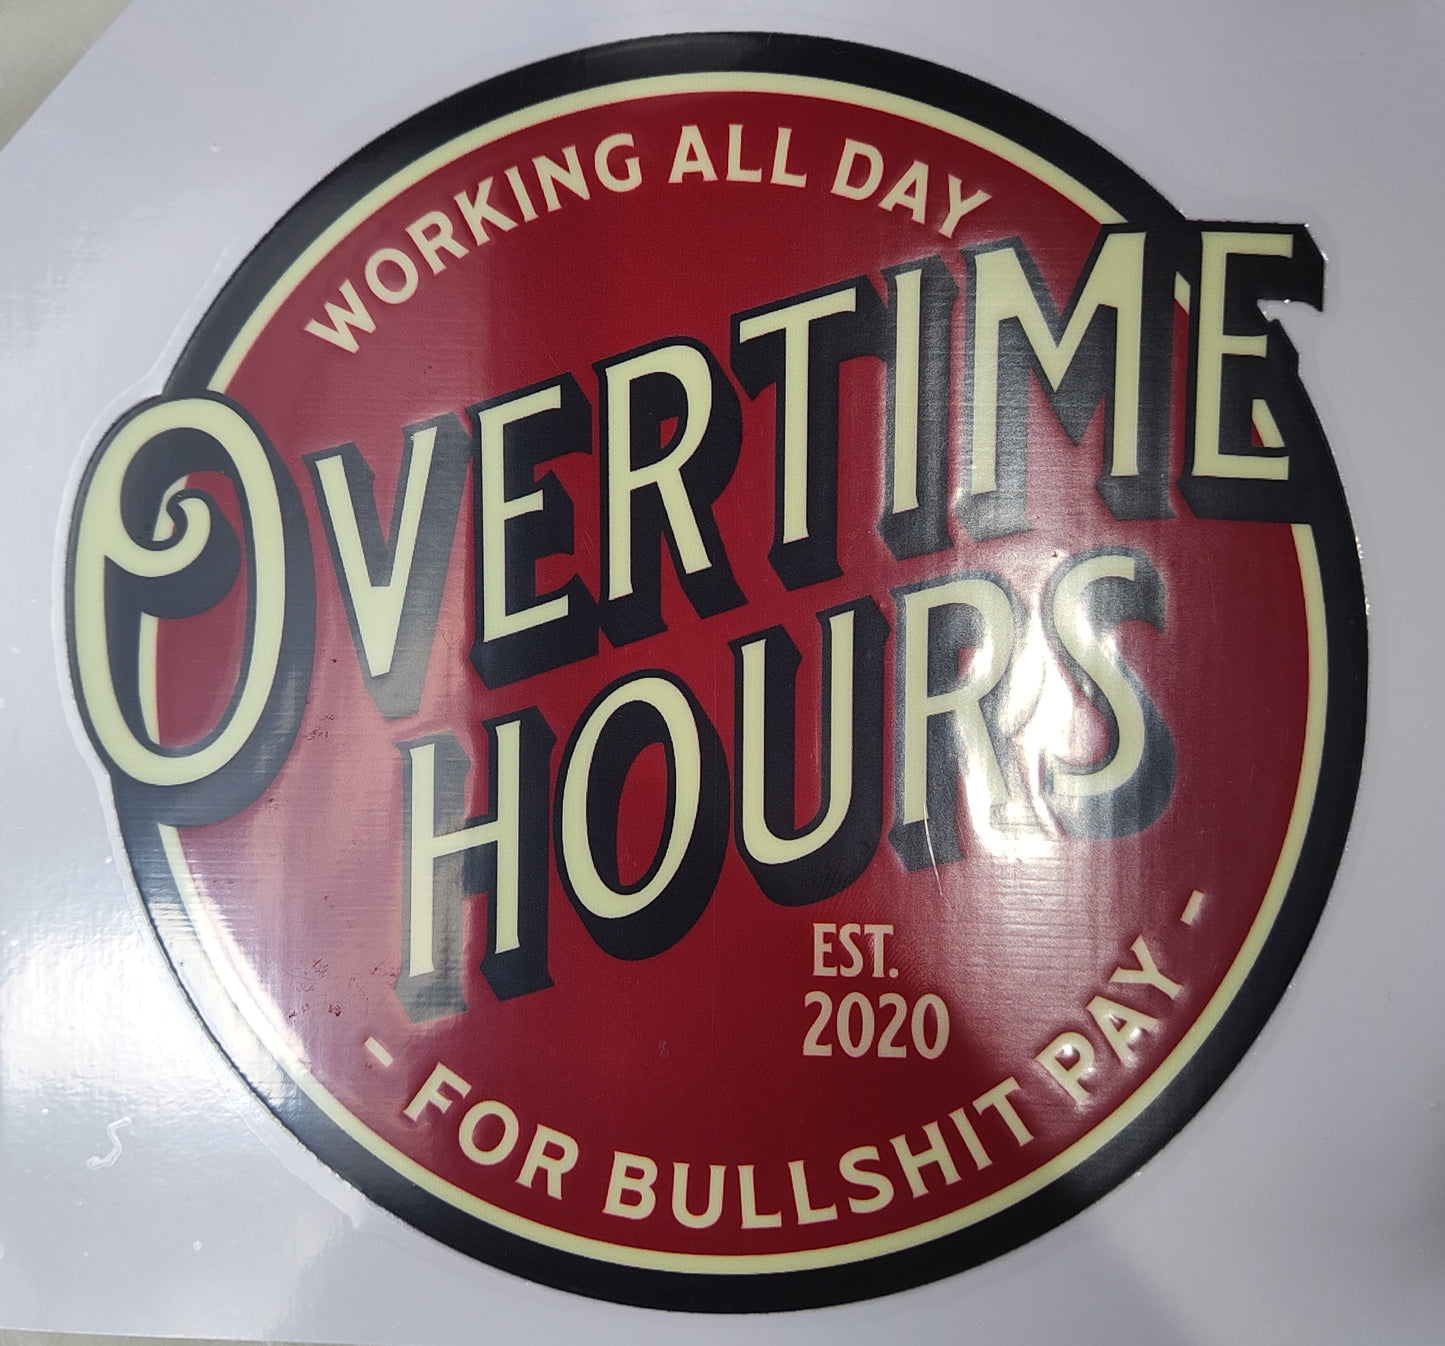 Working All Day Overtime Hours For Bullsht Pay